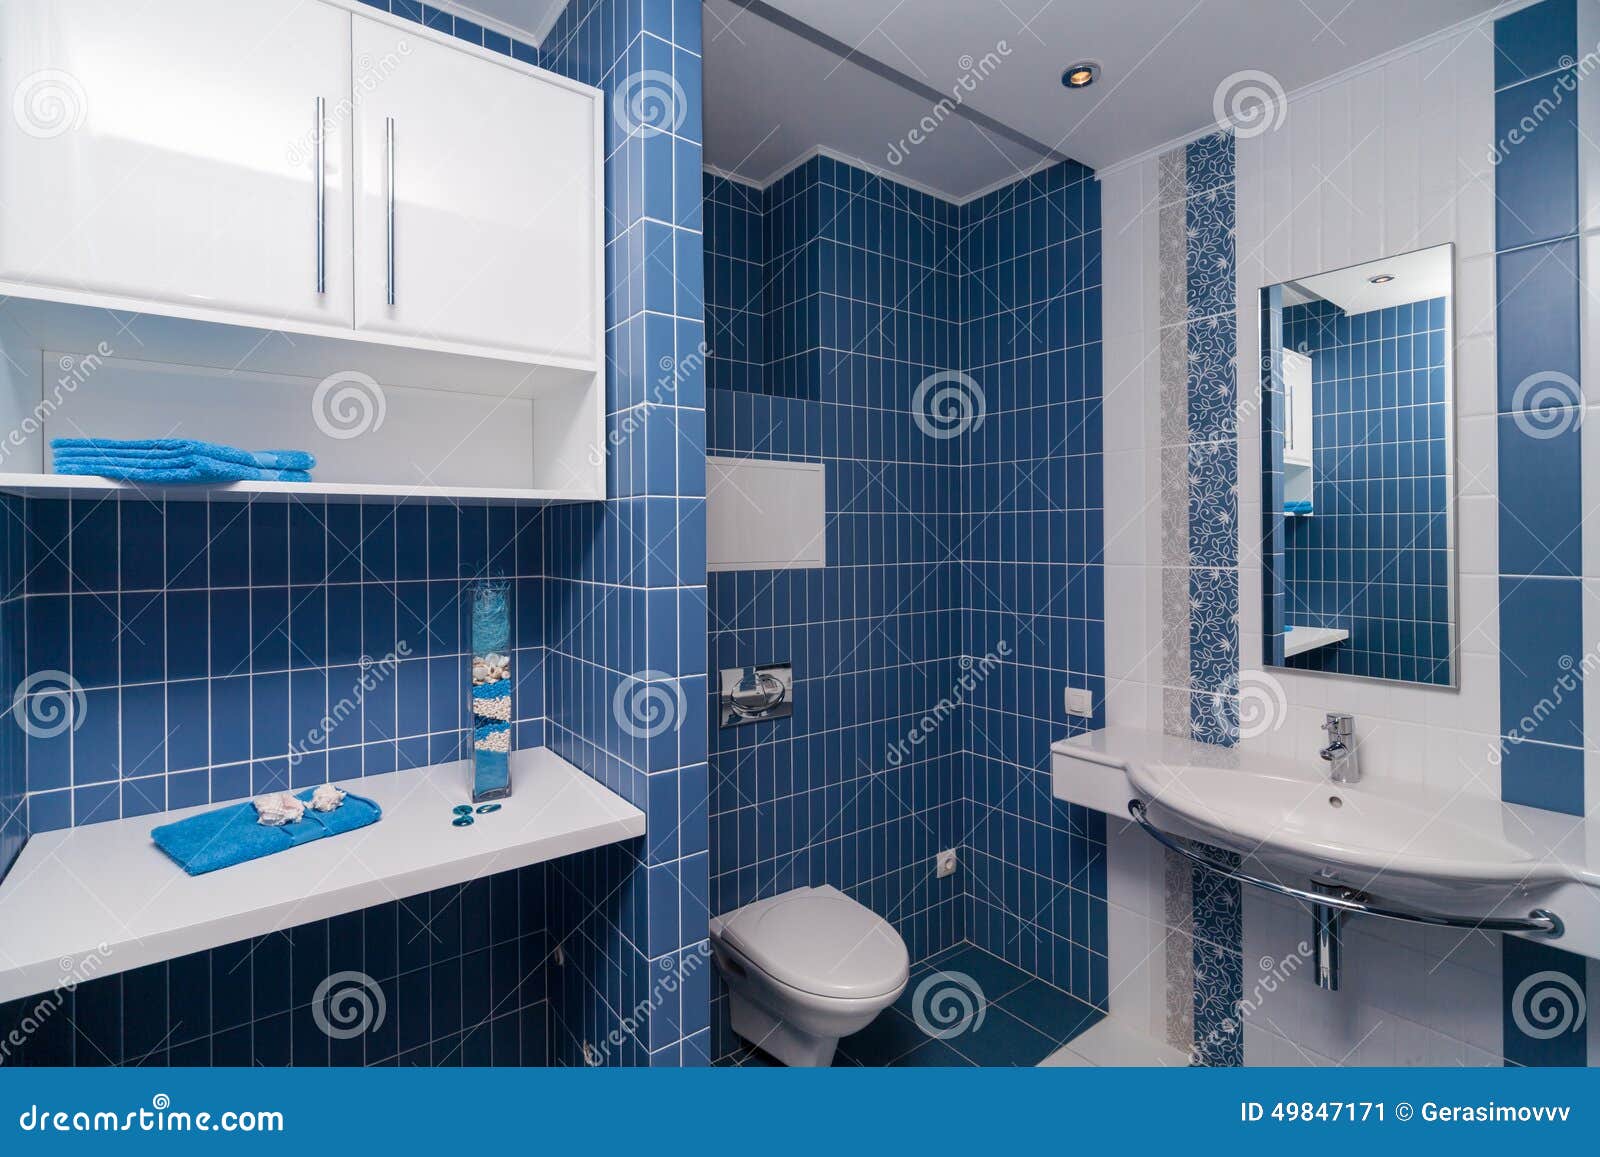 蓝色卫生间墙砖效果图 蓝色卫生间背景墙效果图→MAIGOO图库